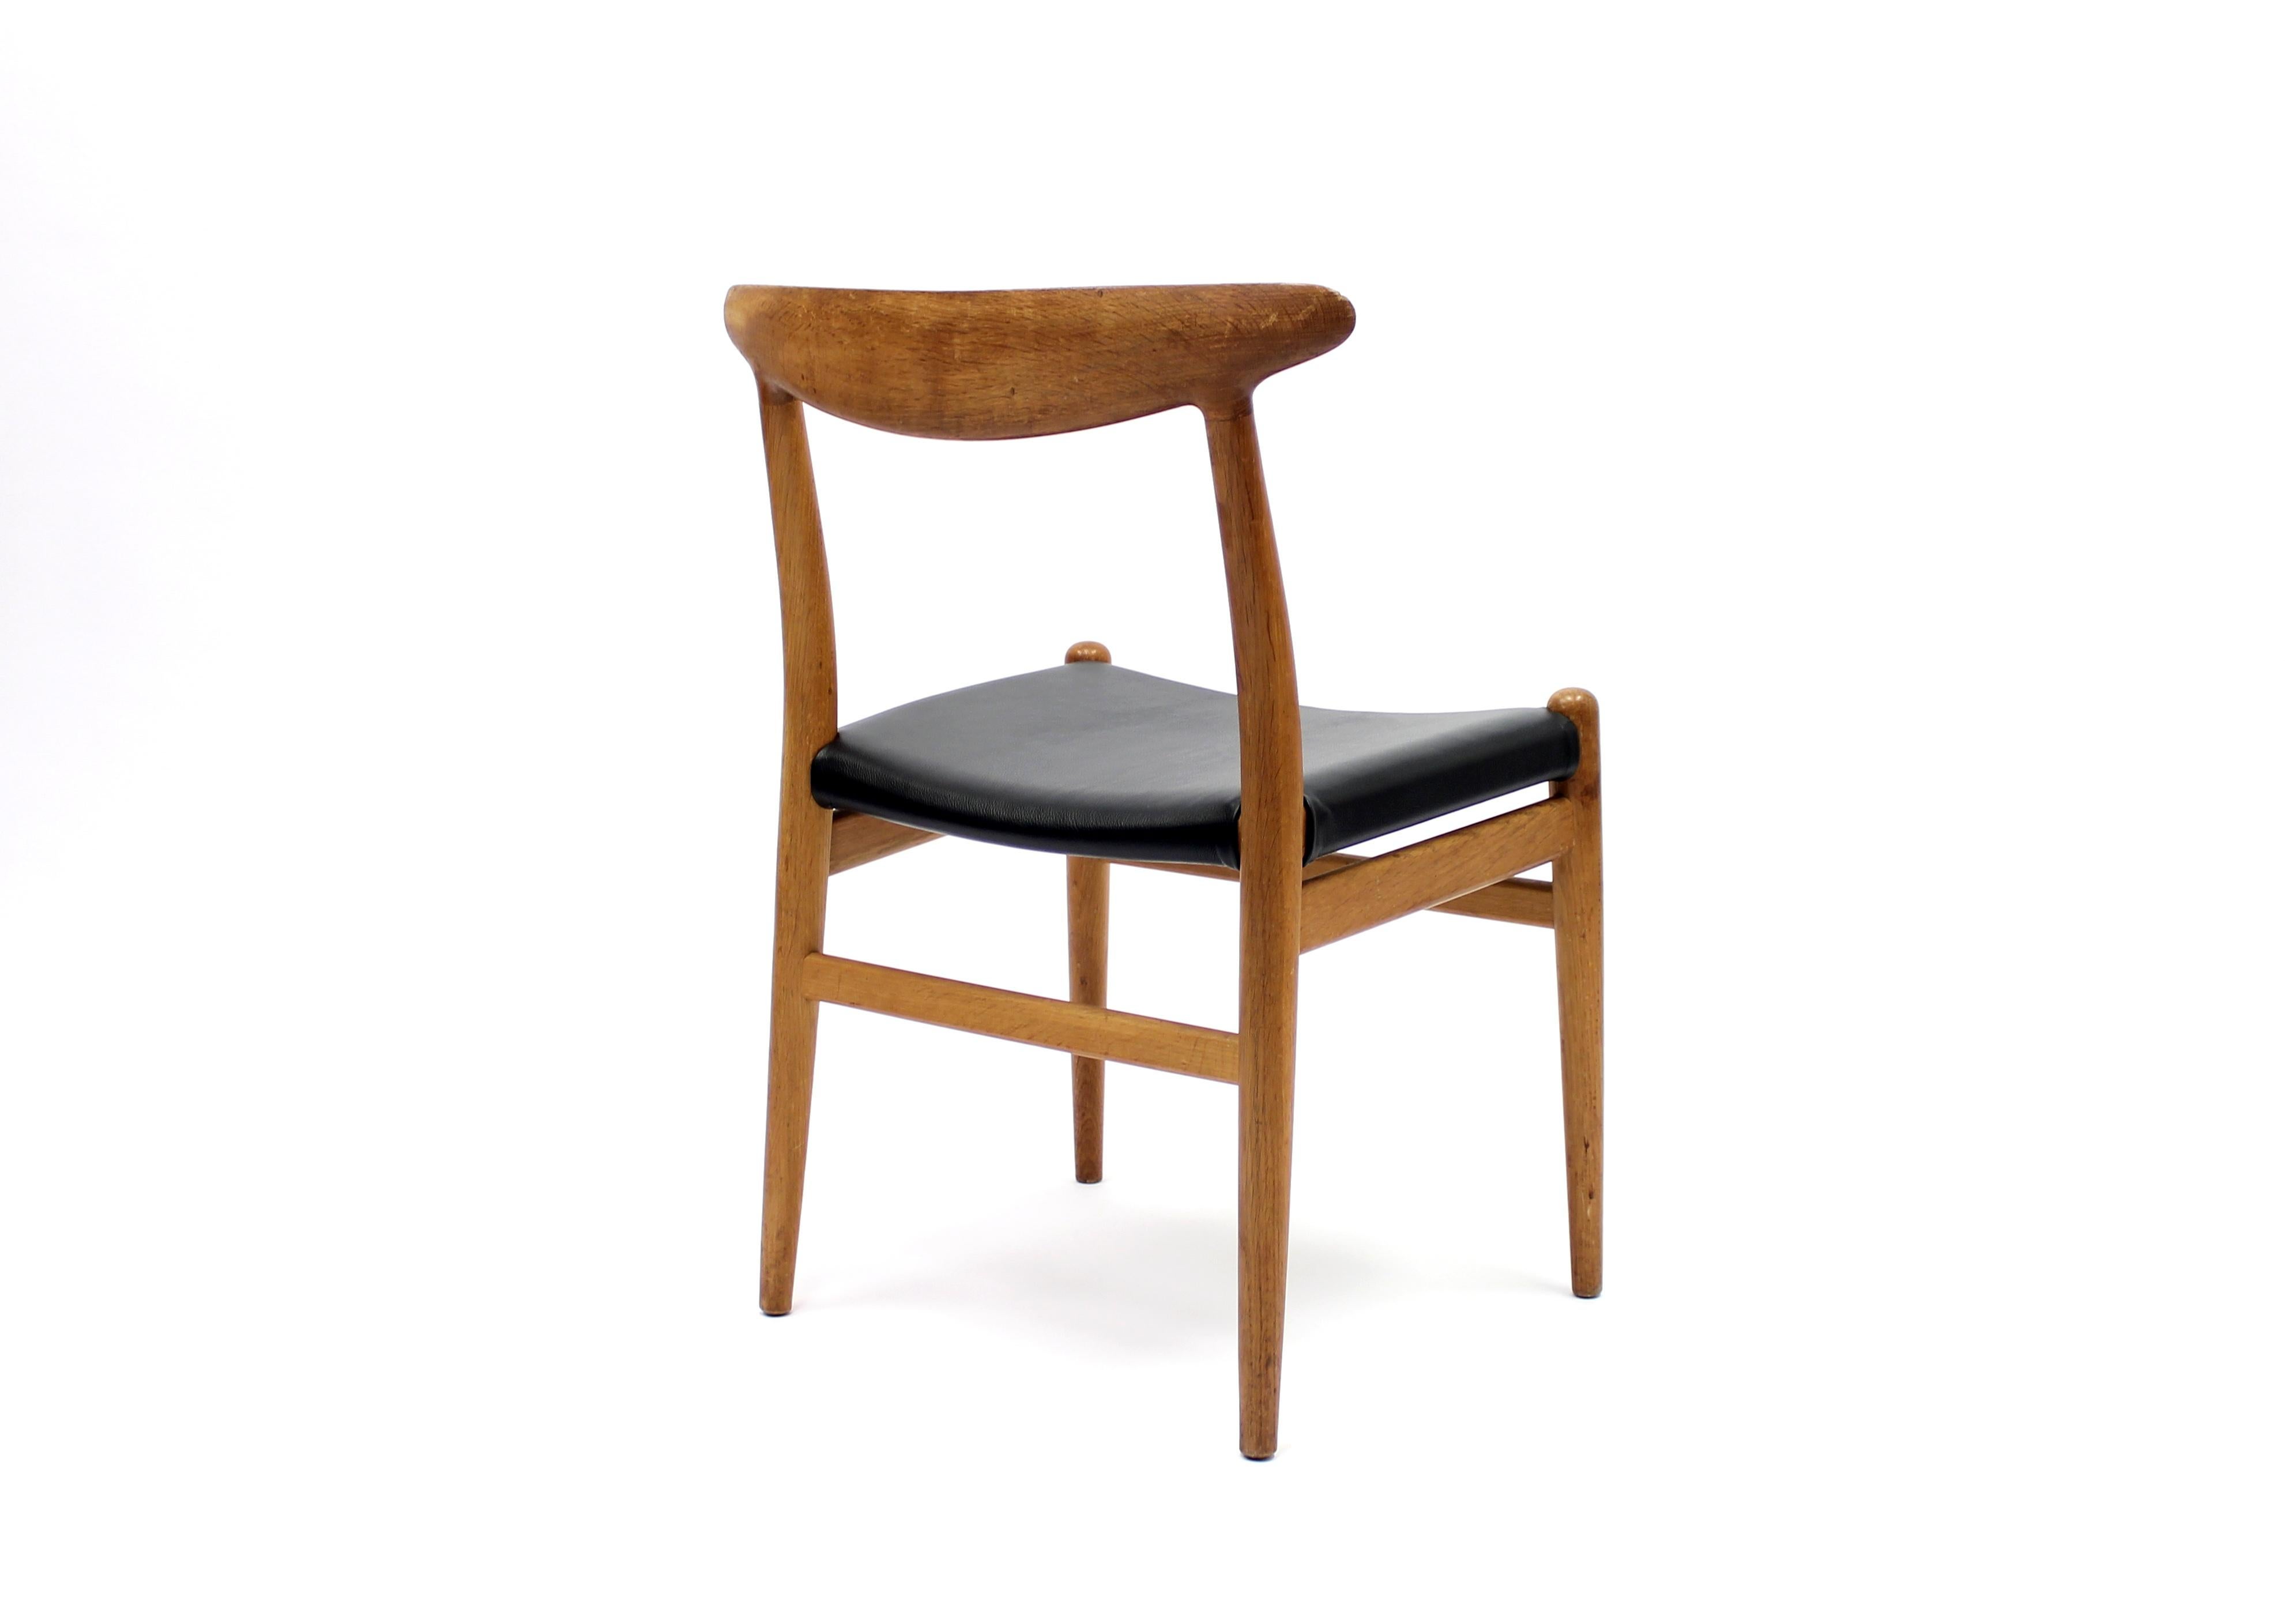 Danish Model W2 Chair by Hans J. Wegner for C.M. Madsen, 1960s